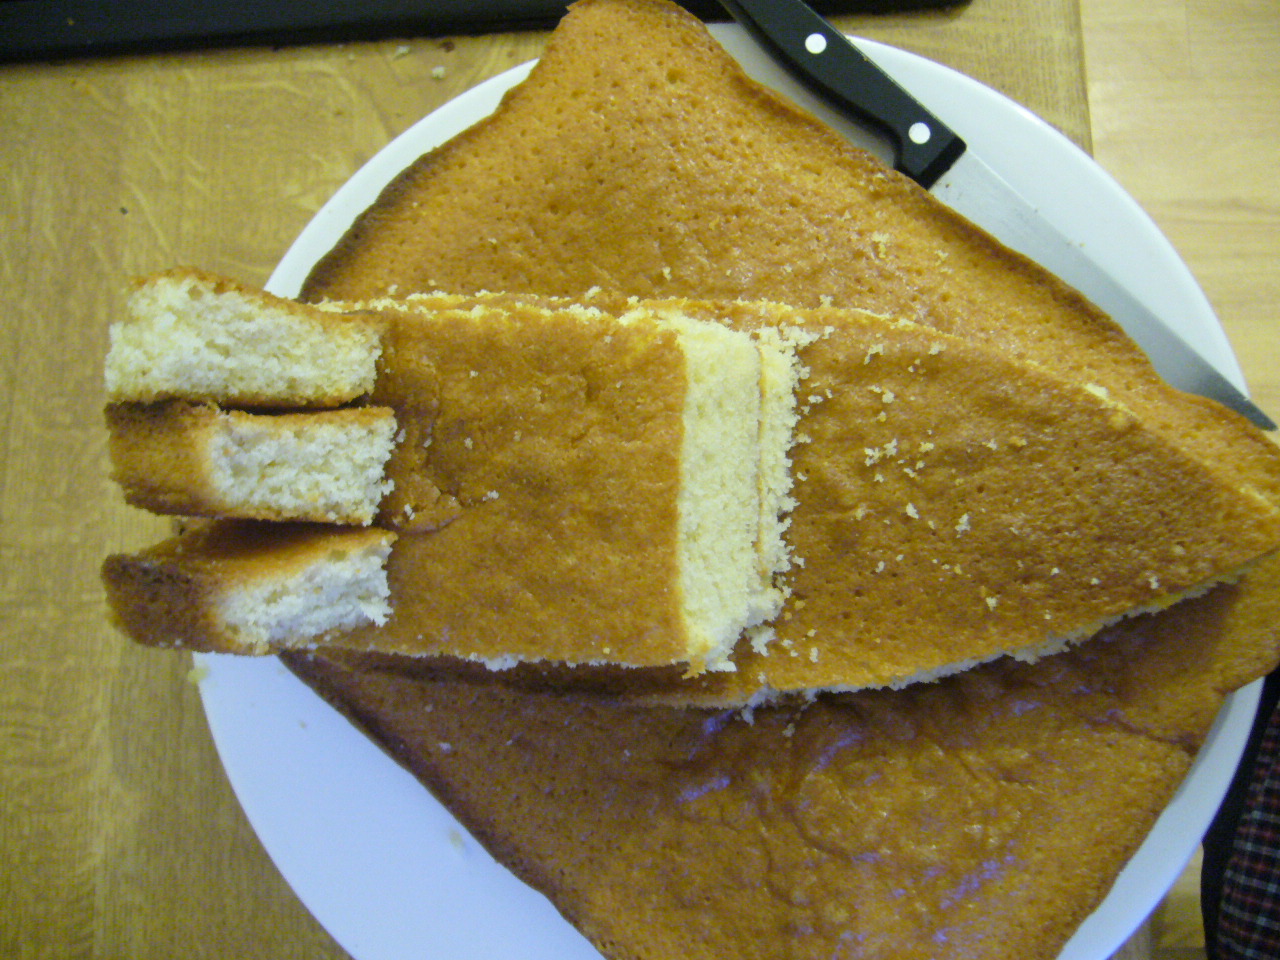 Boat (shaped) cake Cake or Mistake?